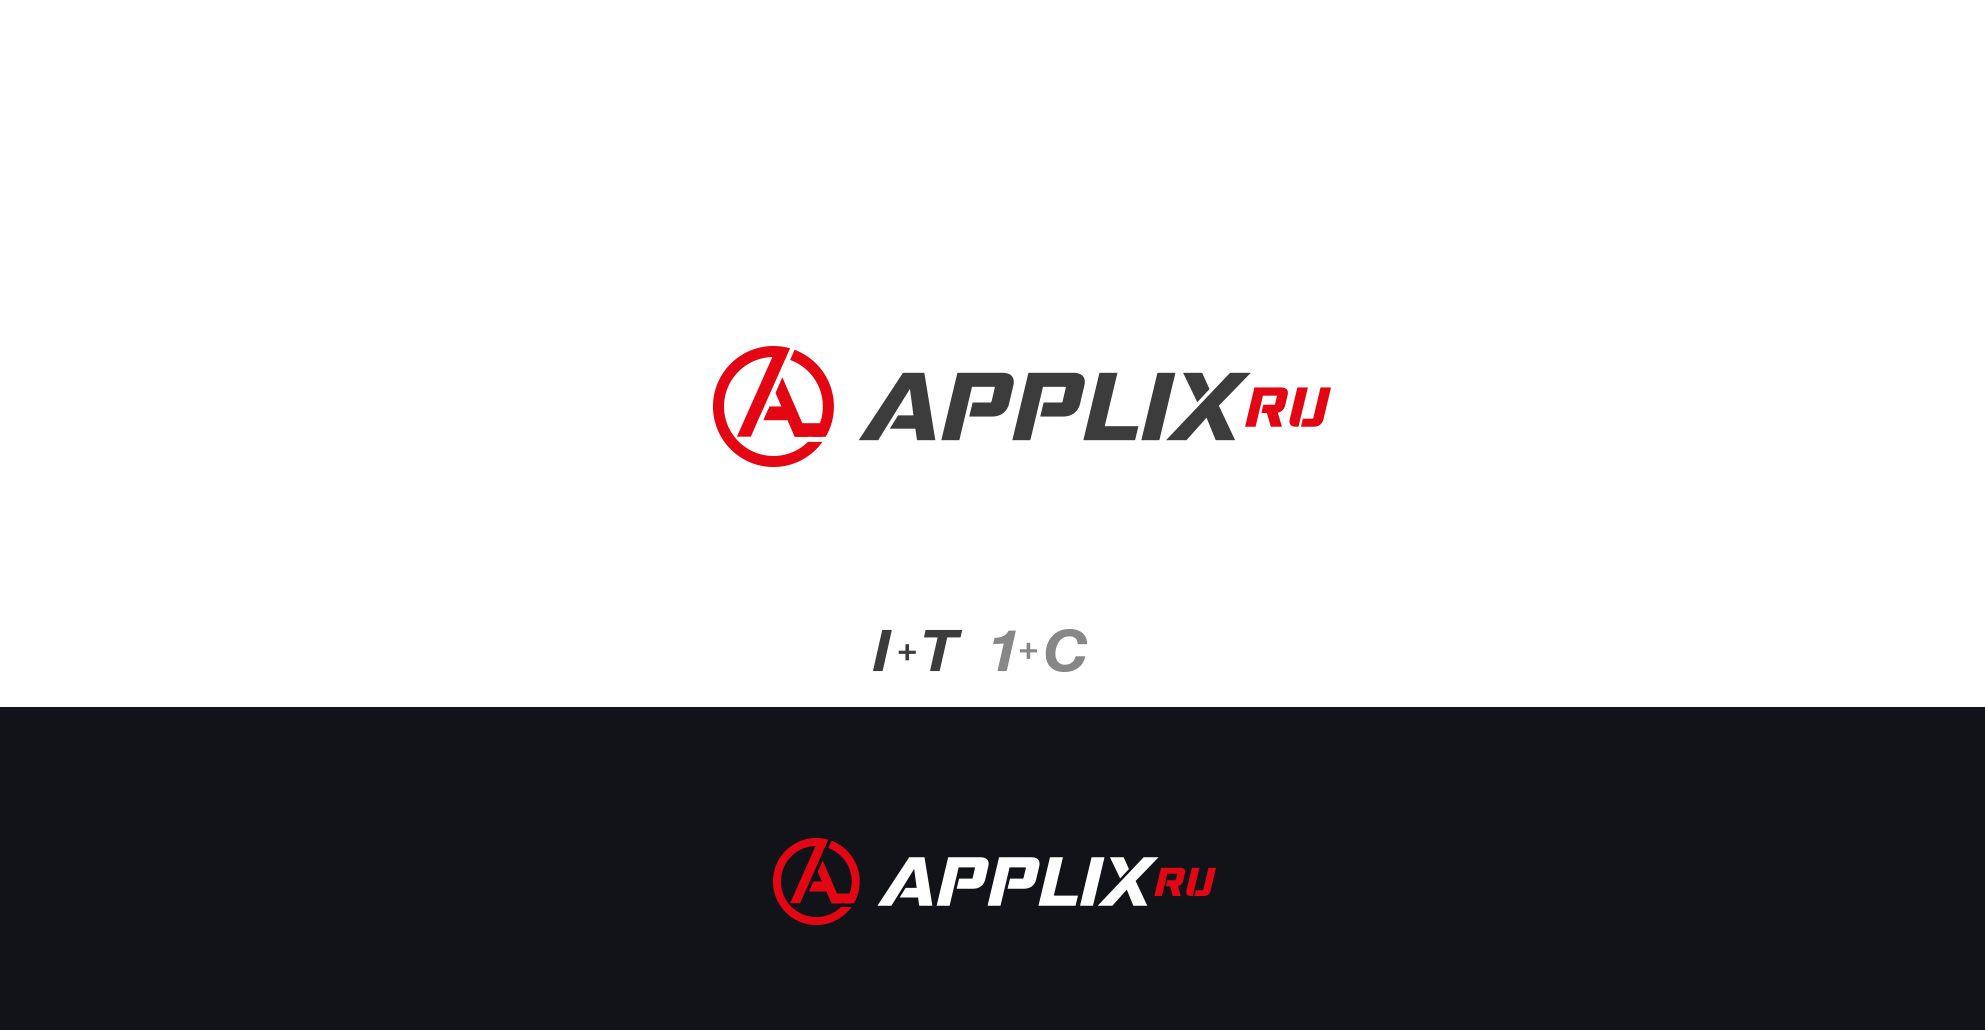 Лого и фирменный стиль для applix.ru / APPLIX.RU - дизайнер comicdm